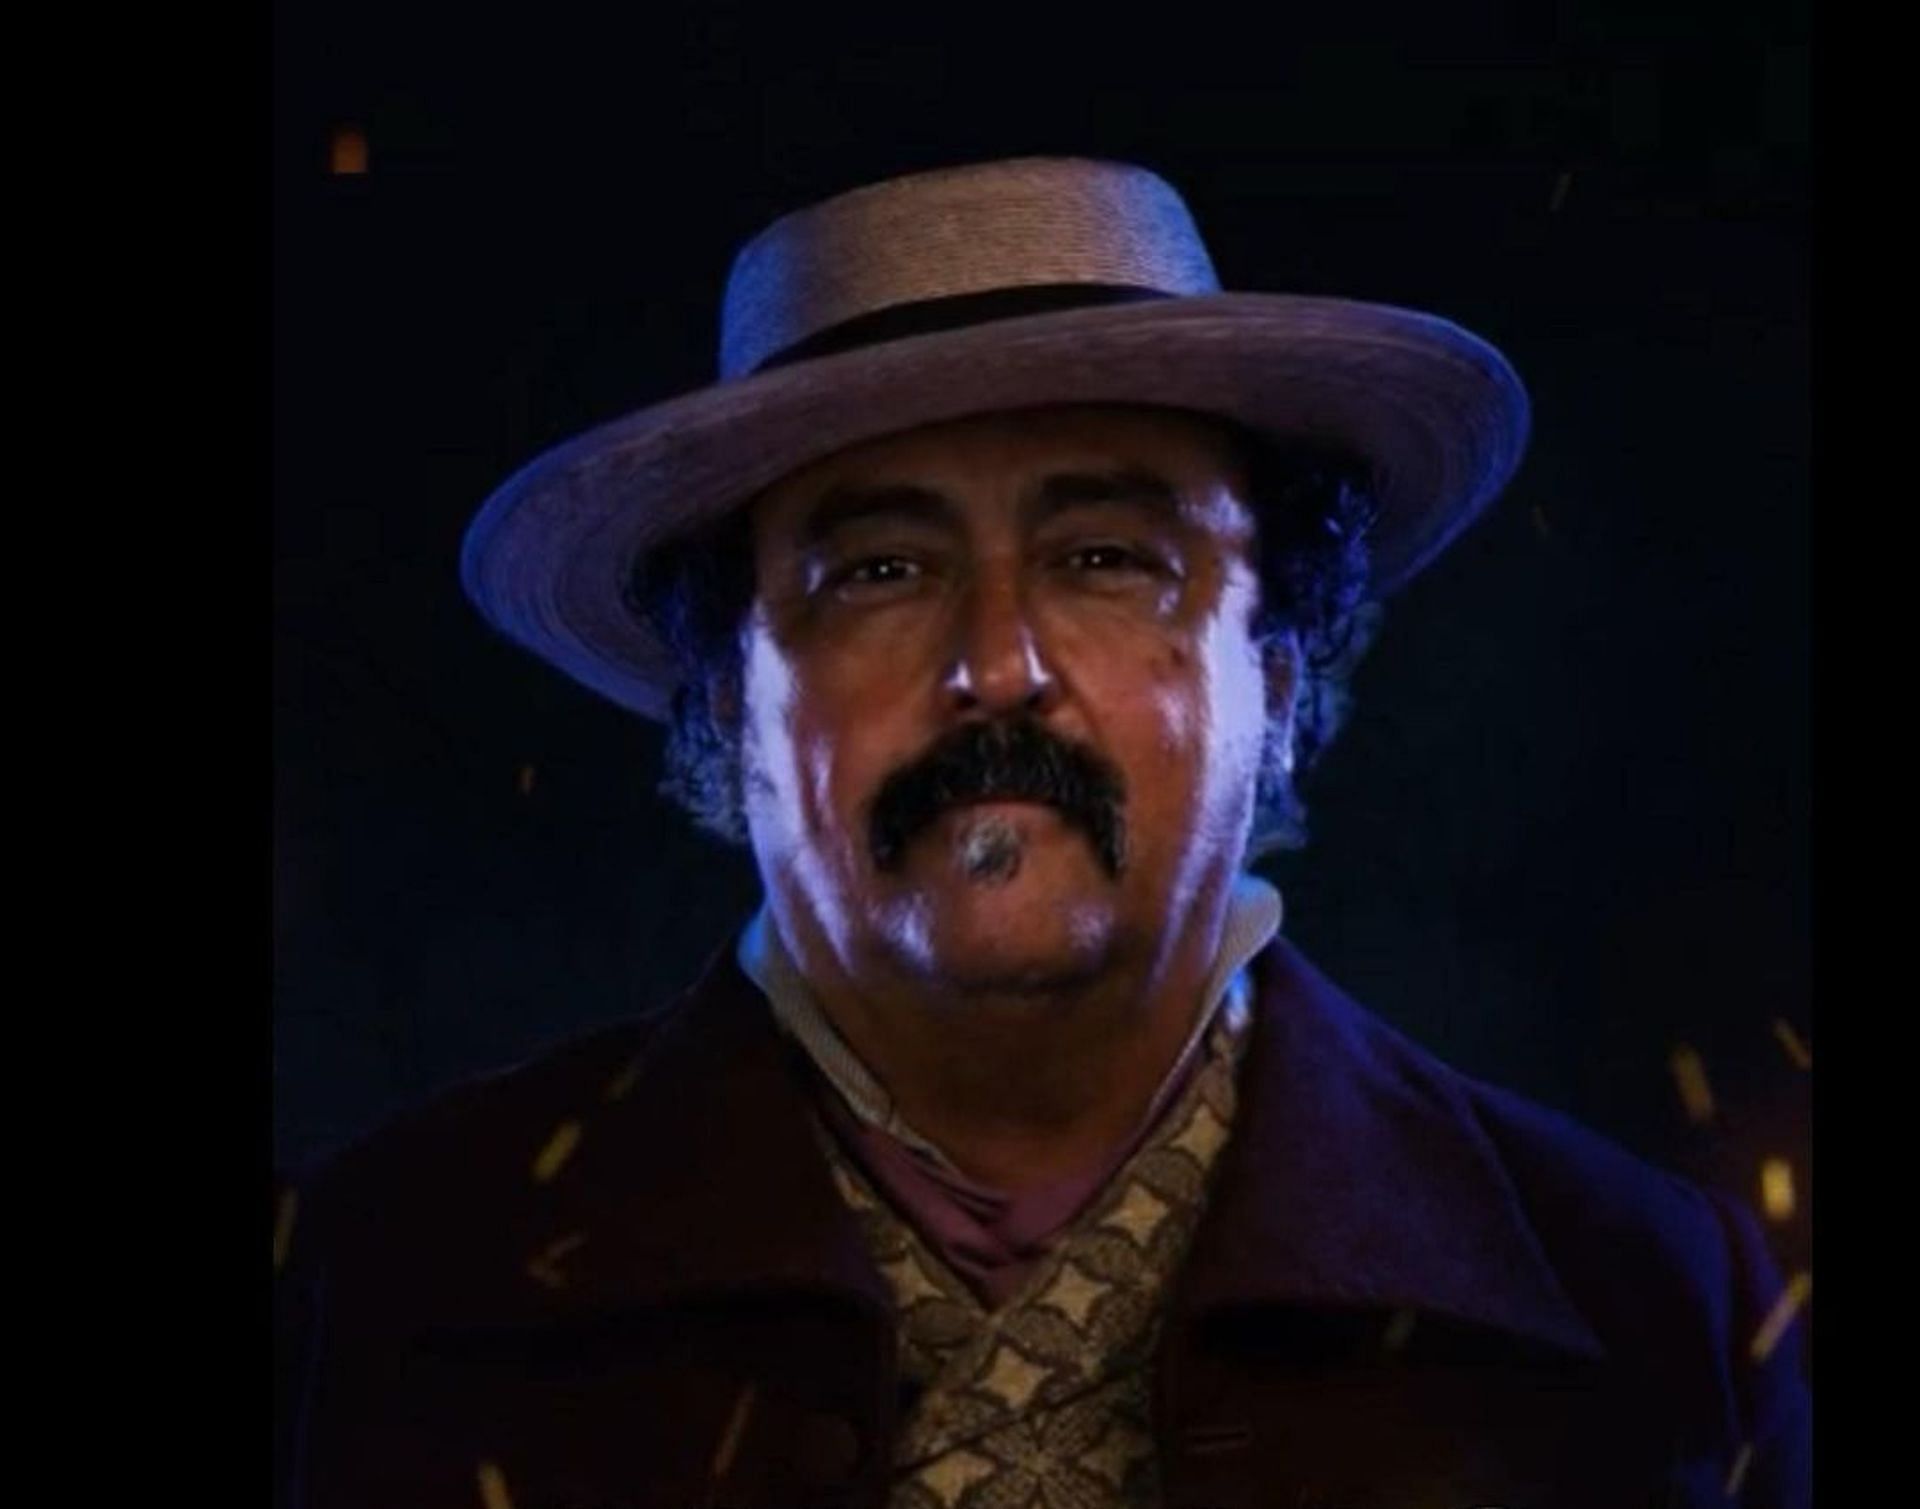 Paco Tous as Bernardo El Mudo in Zorro (Image via Instagram/@pacotous)